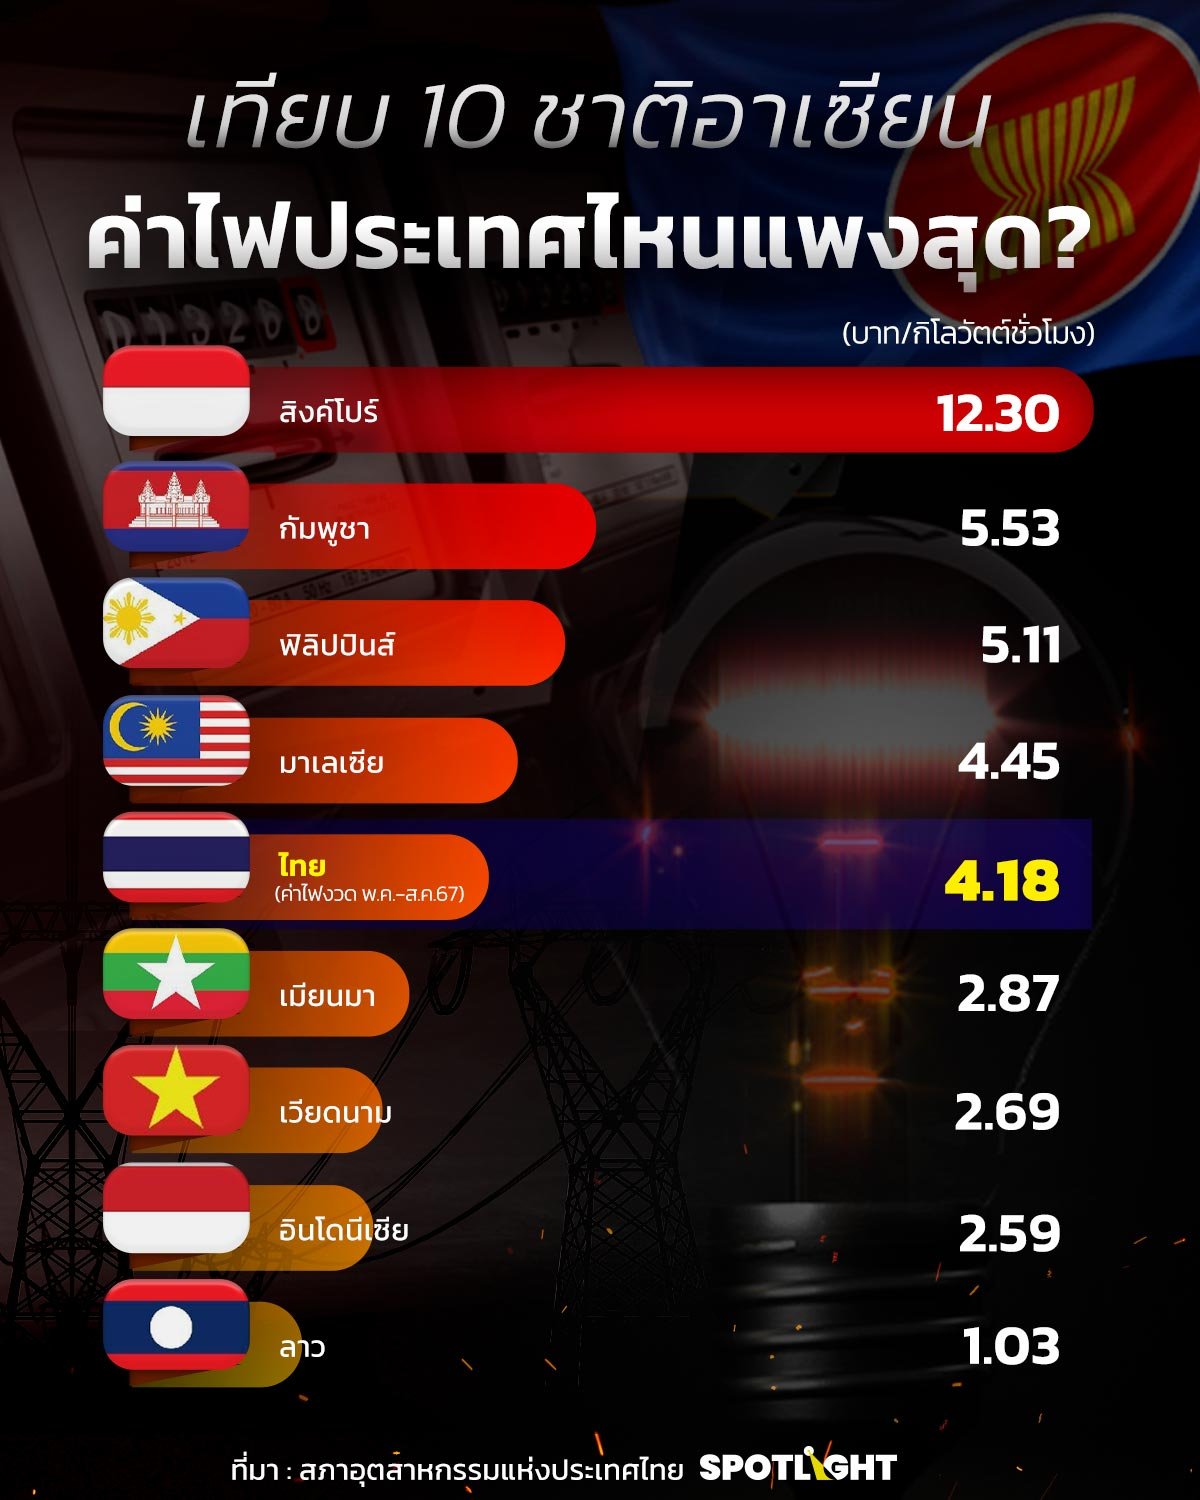 ค่าไฟไทยเทียบอาเซียน